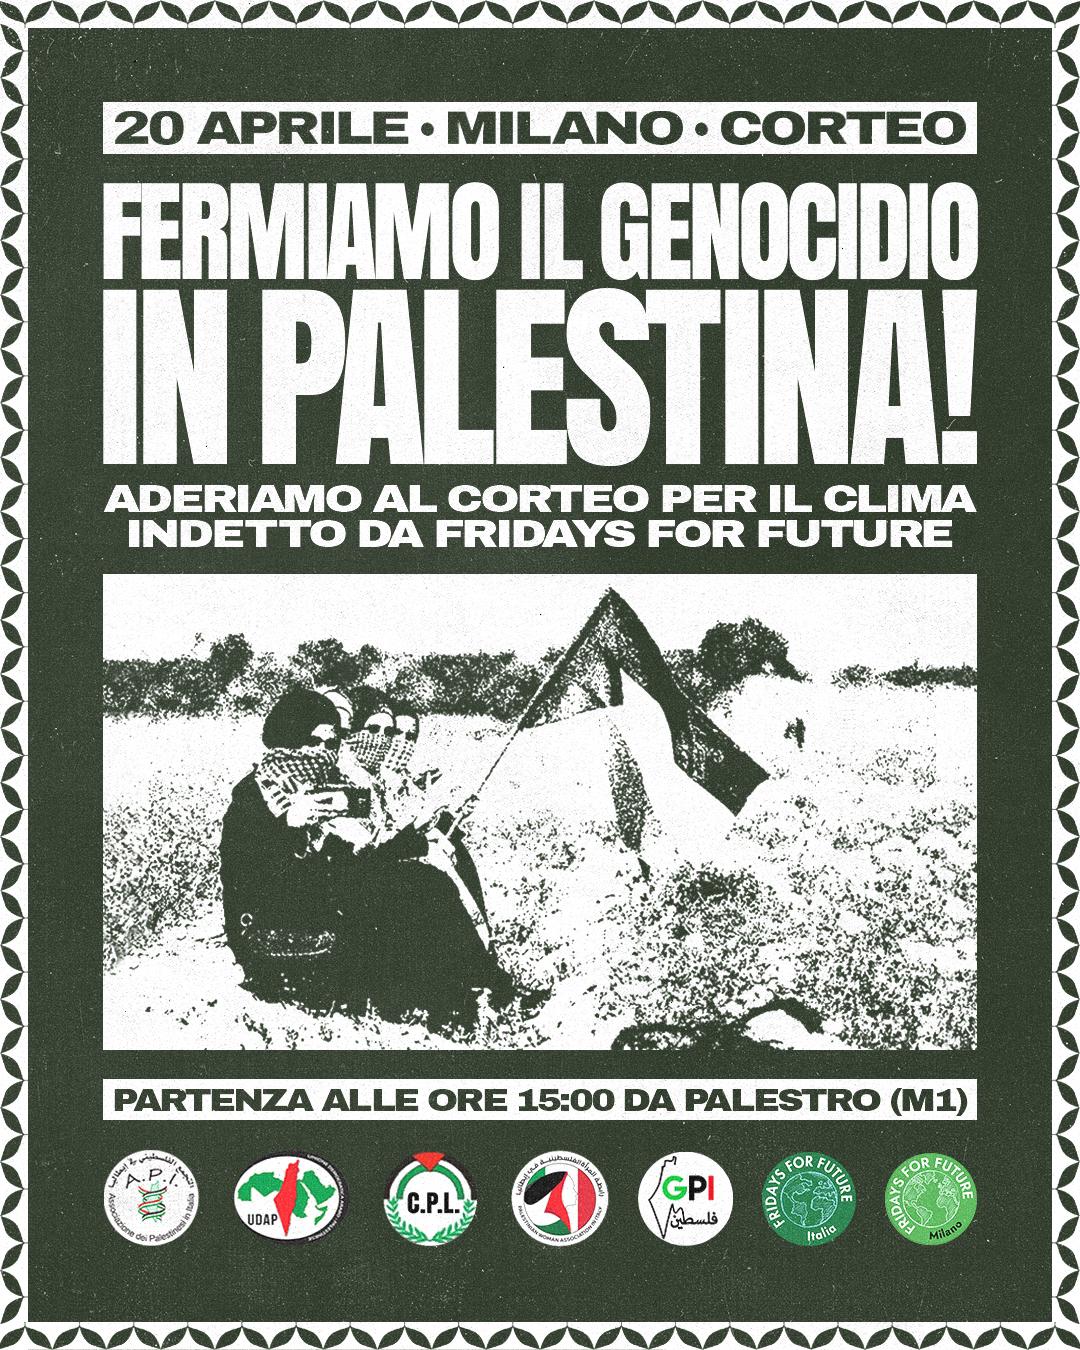 "Fermiamo il genocidio in Palestina" e adesione al corteo per il clima di "Fridays for Future"